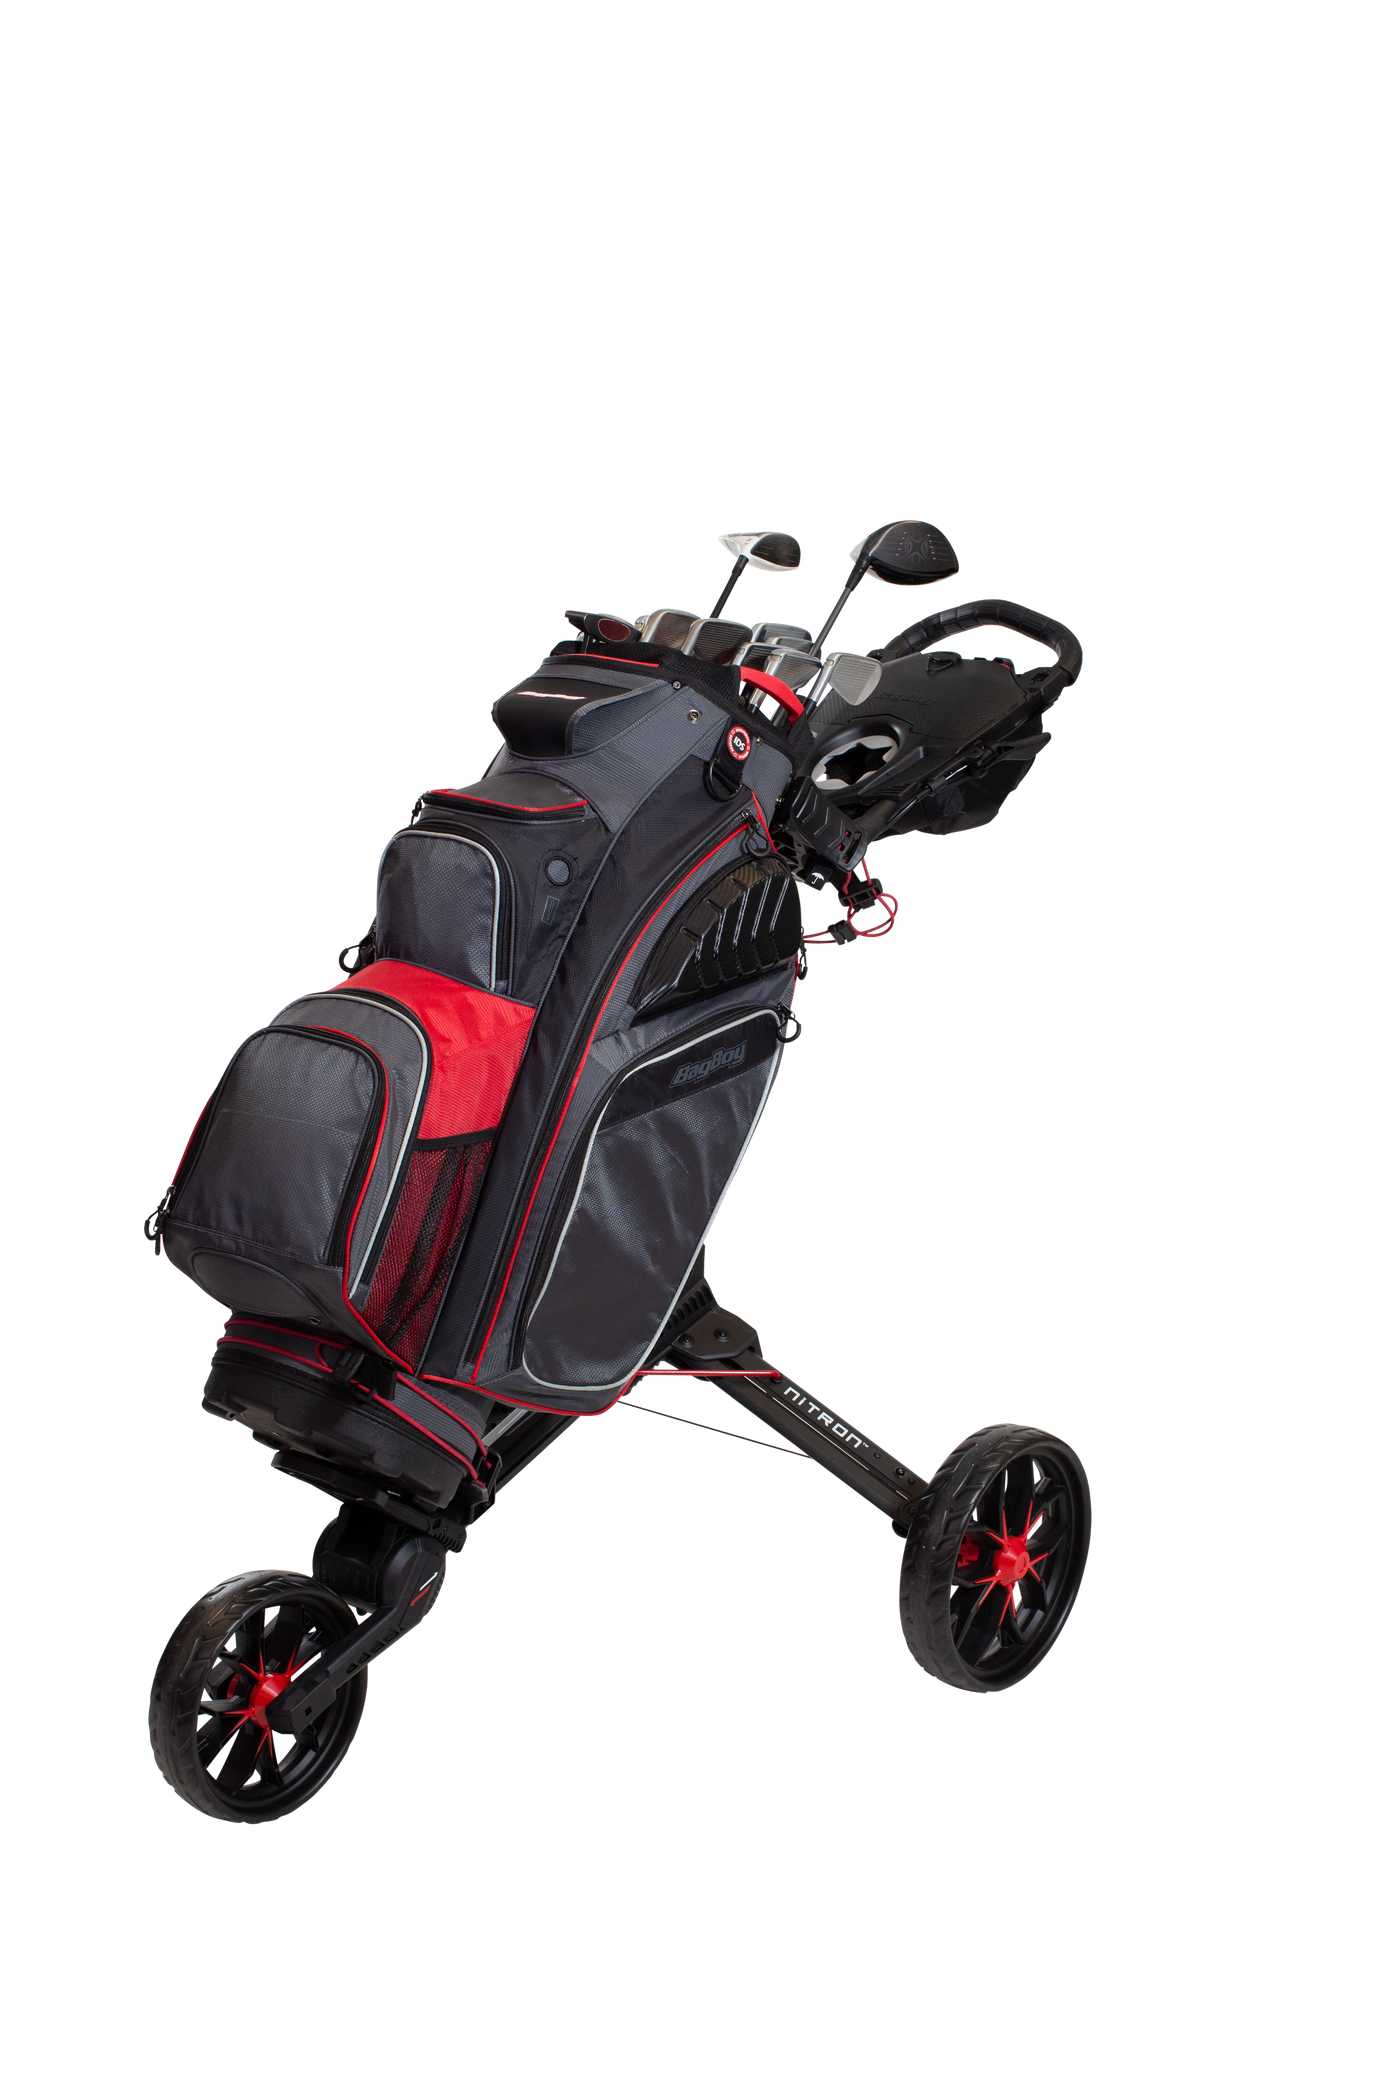 BagBoy 3-wheel golf trolley Nitron - GOLFDIGEST CHOICE AWARD 2019/20/21: Best 3-wheel trolley